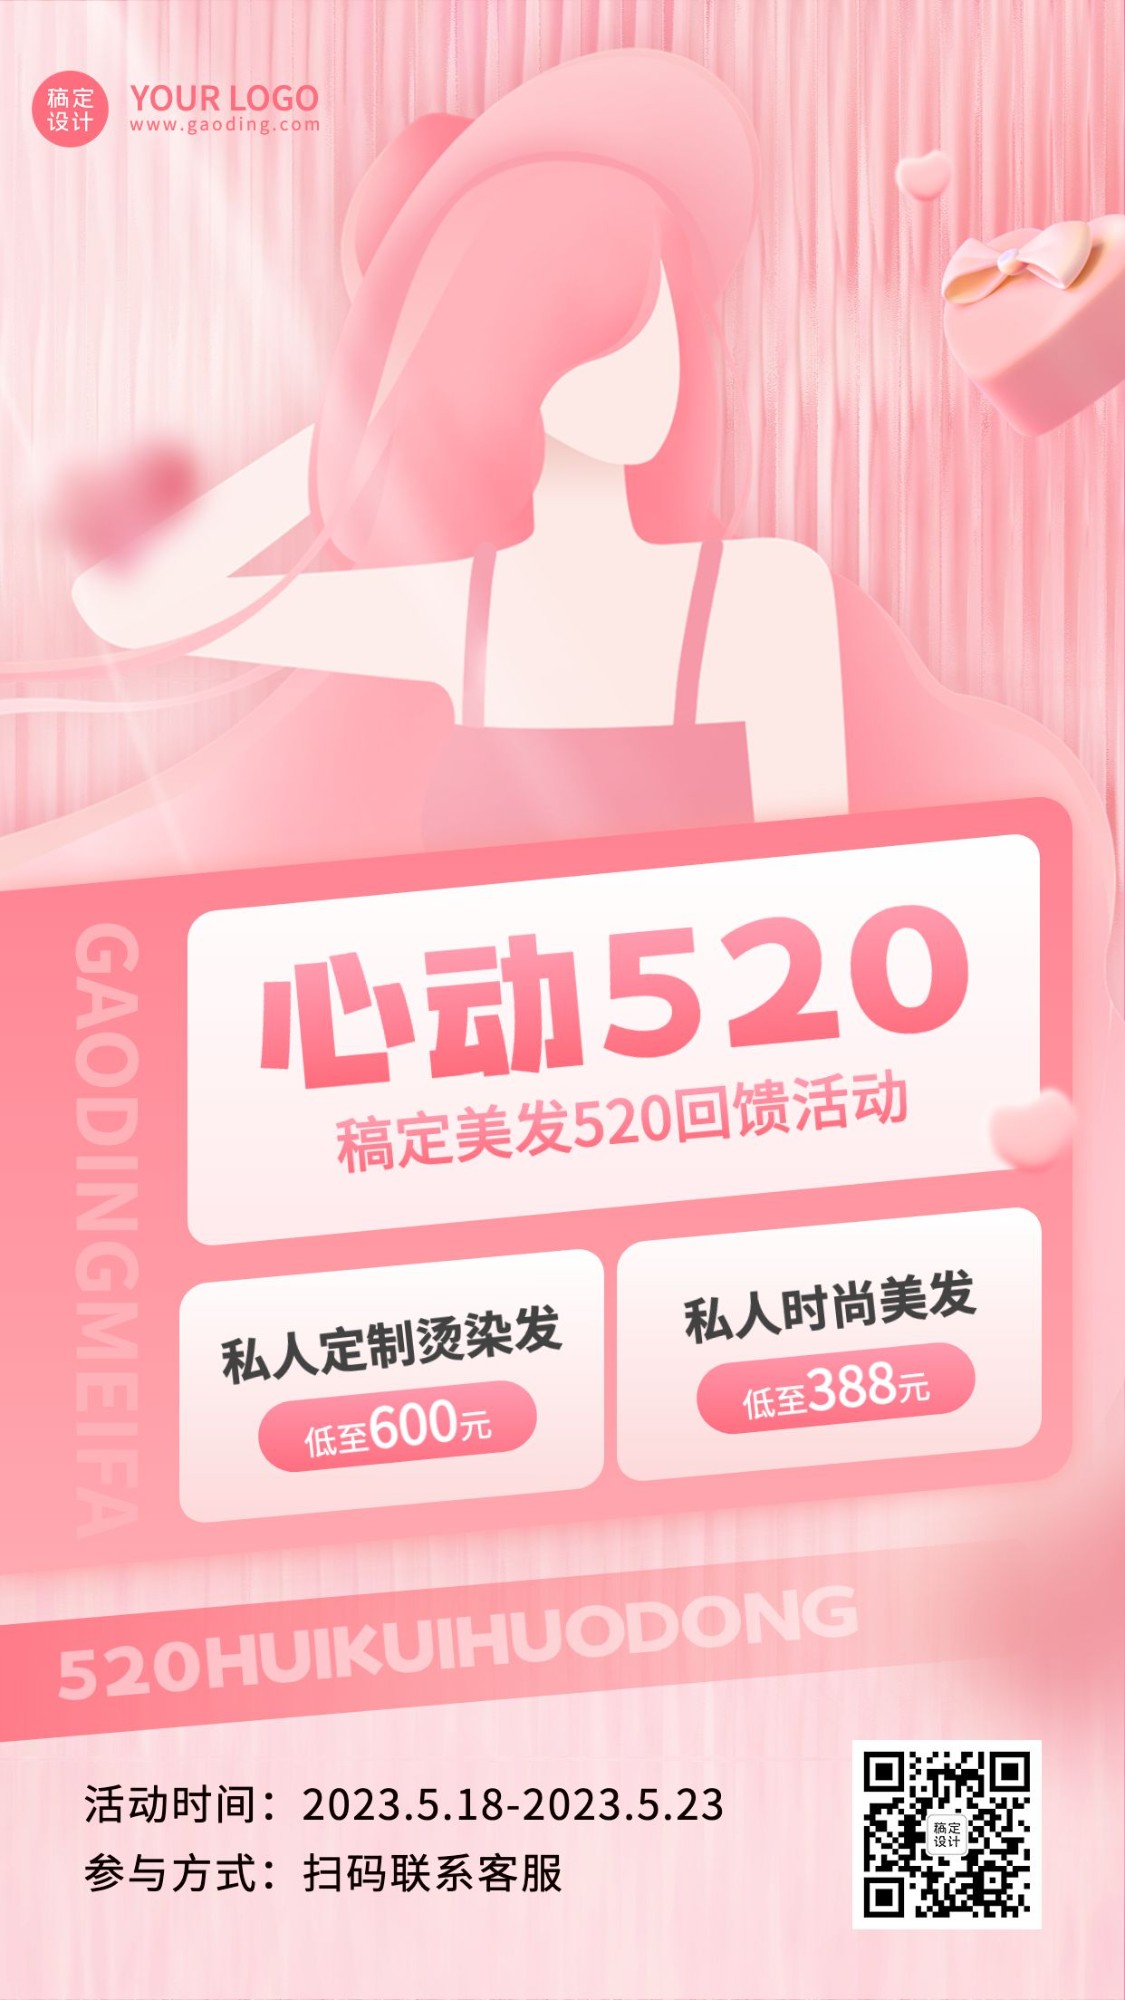 520情人节美容美妆节日活动竖版海报预览效果